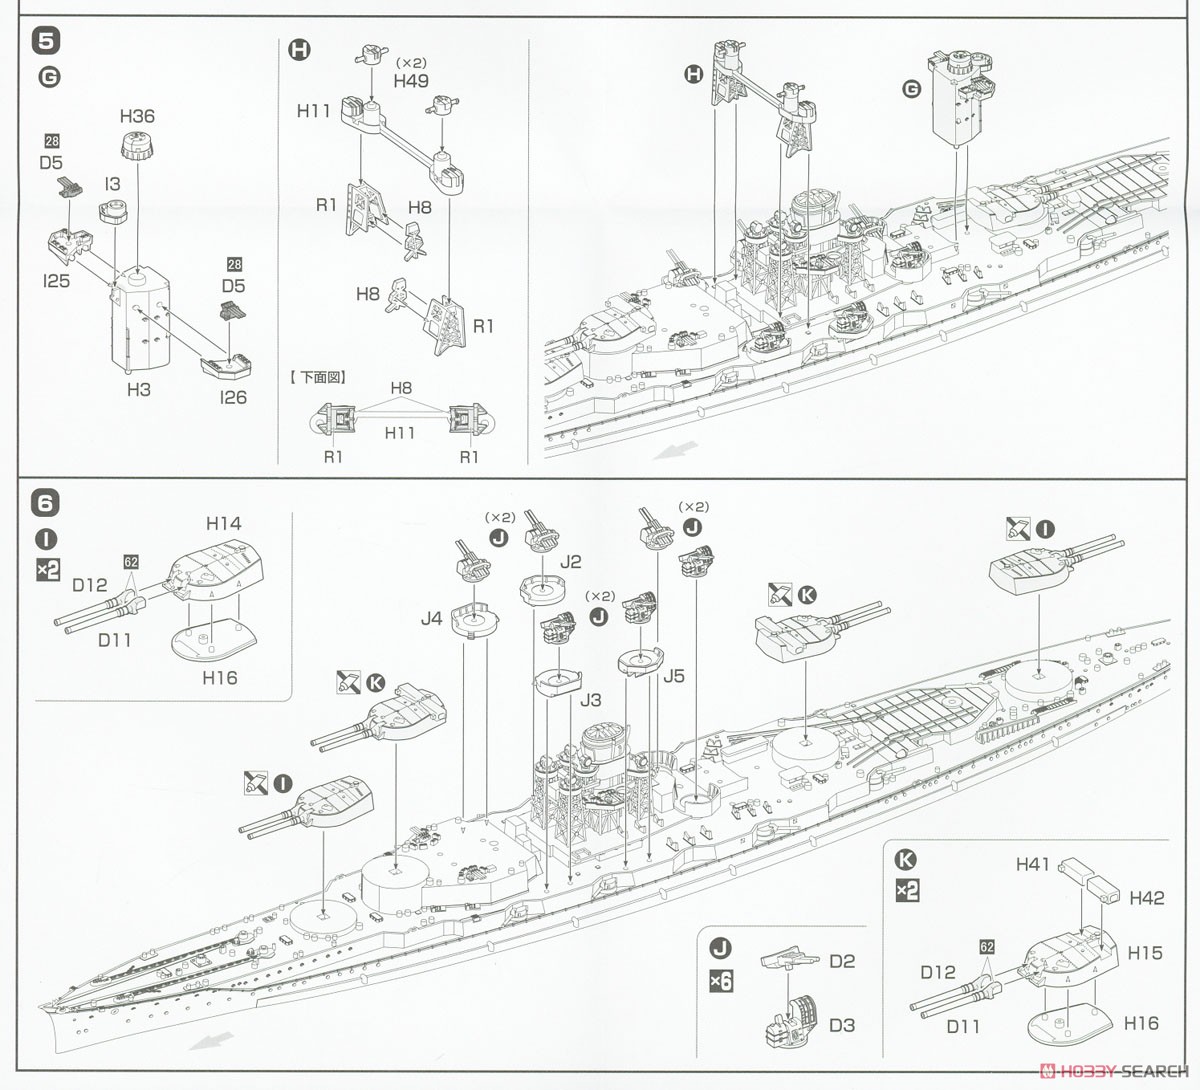 高速戦艦 榛名 フルハルモデル (プラモデル) 設計図3